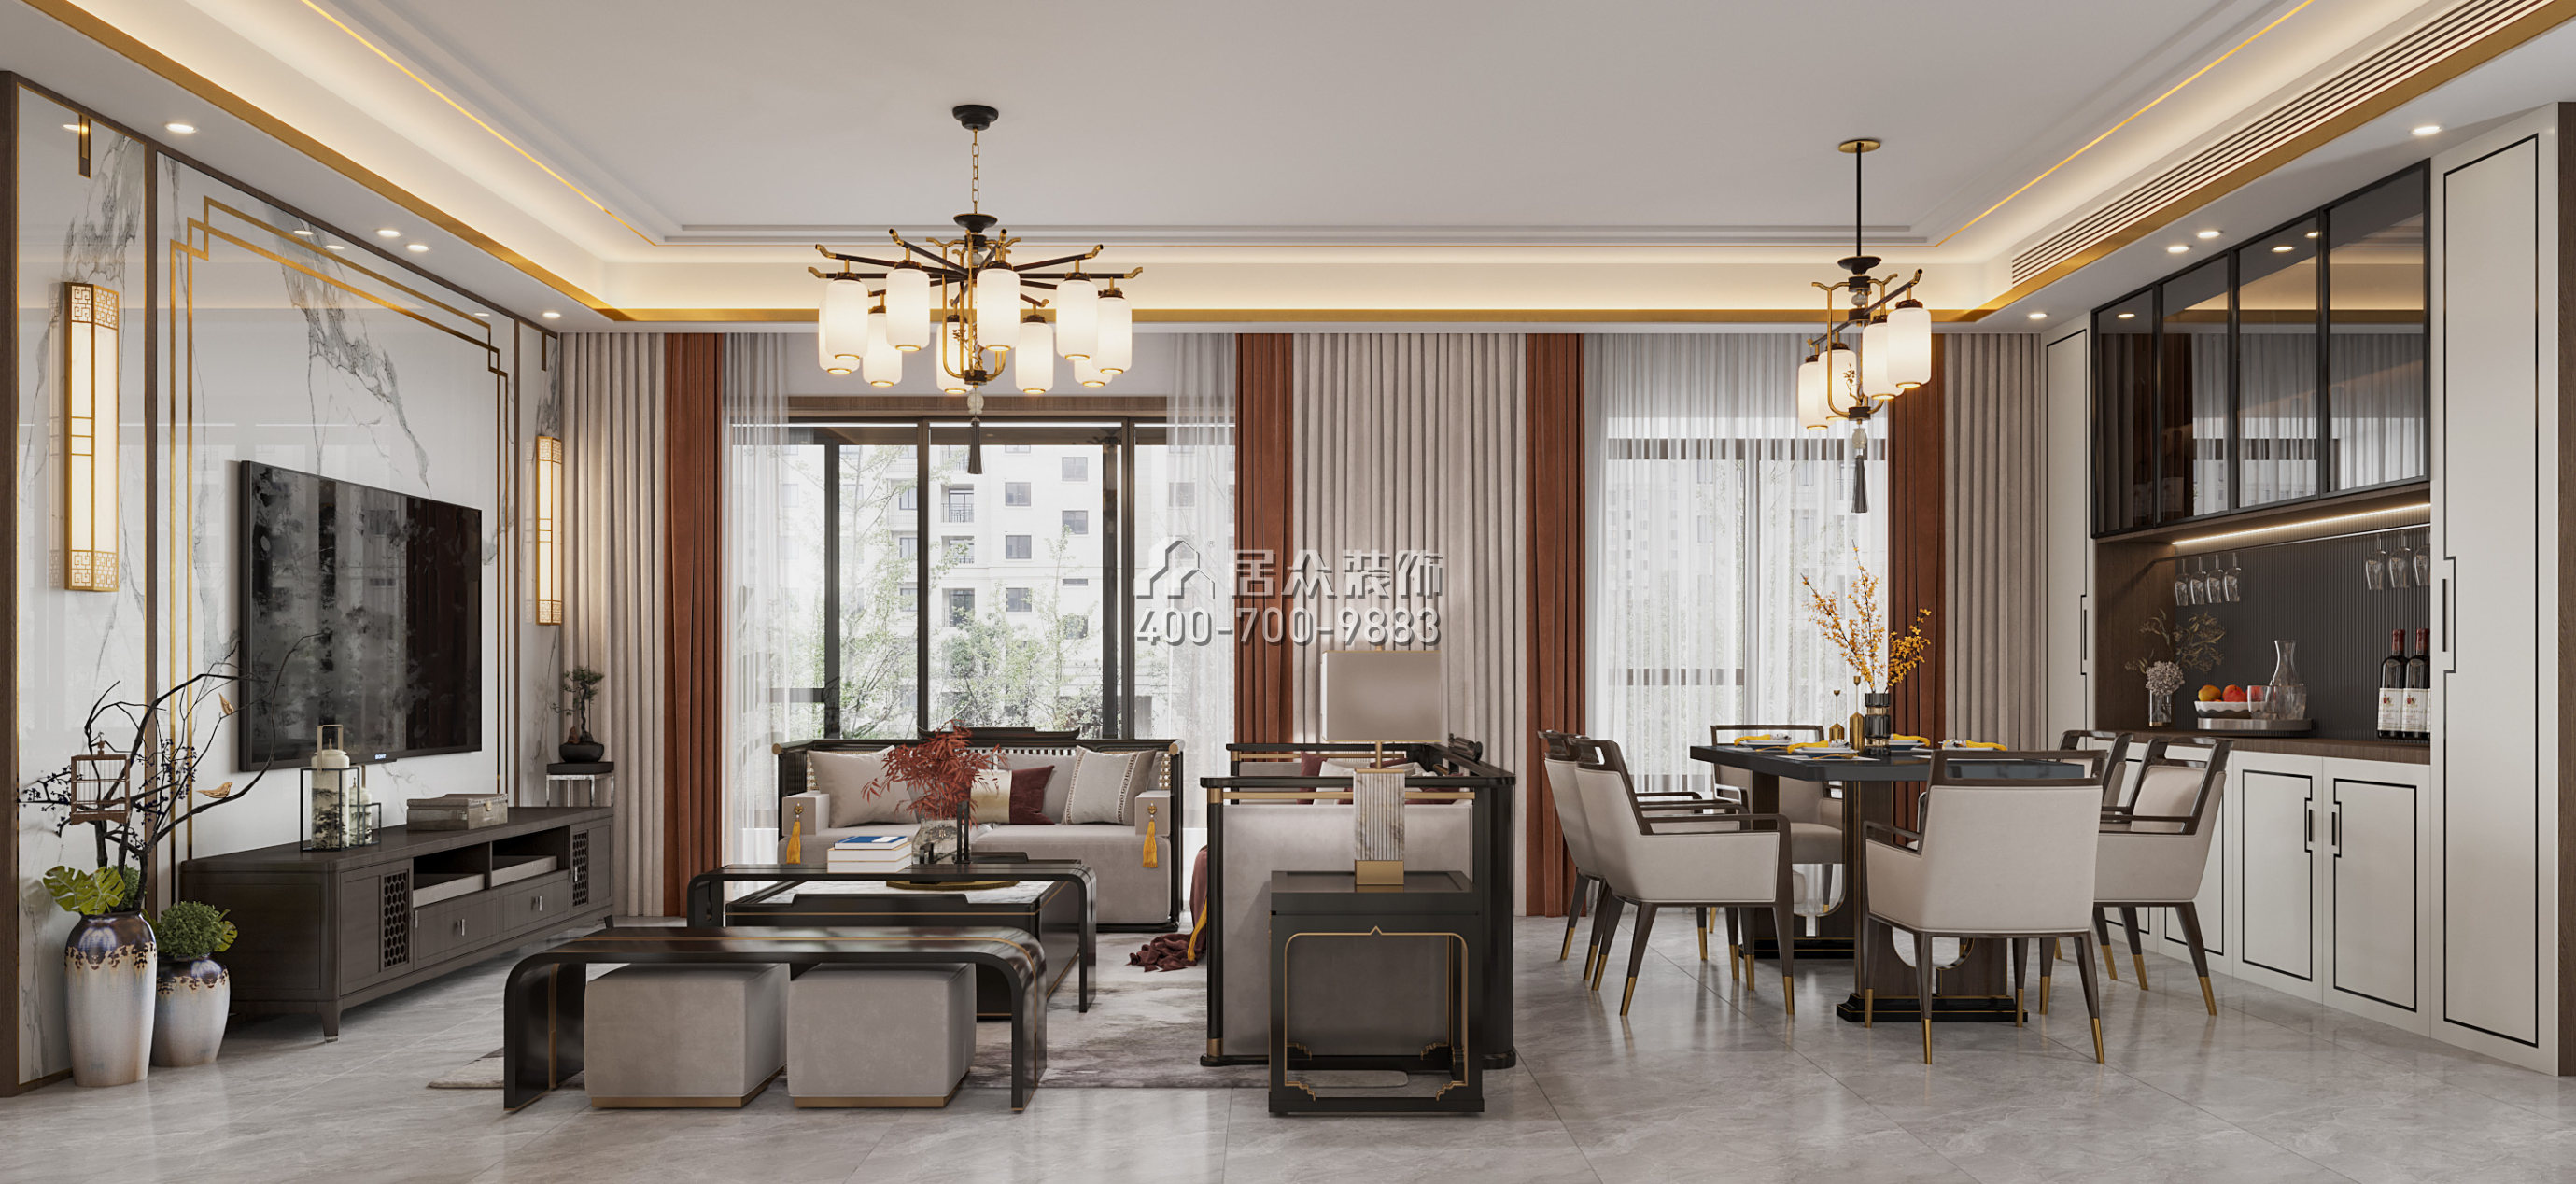 今日香沙御景園120平方米中式風格平層戶型客廳裝修效果圖